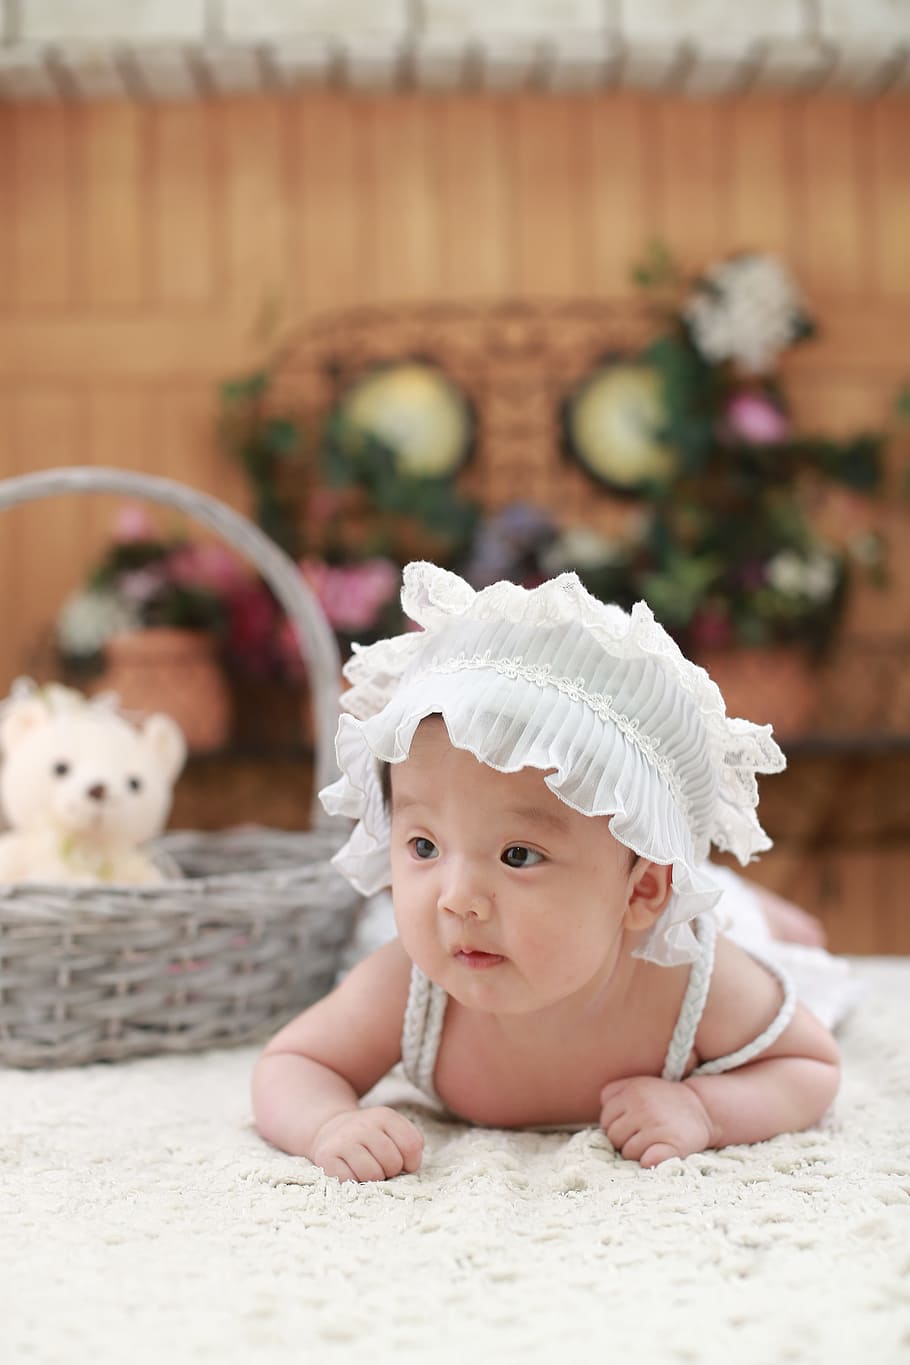 赤ちゃん, 身に着けている, 白, 頭飾り, 横に, グレー, 枝編み細工品バスケット, かわいい, 萌え, 華麗です